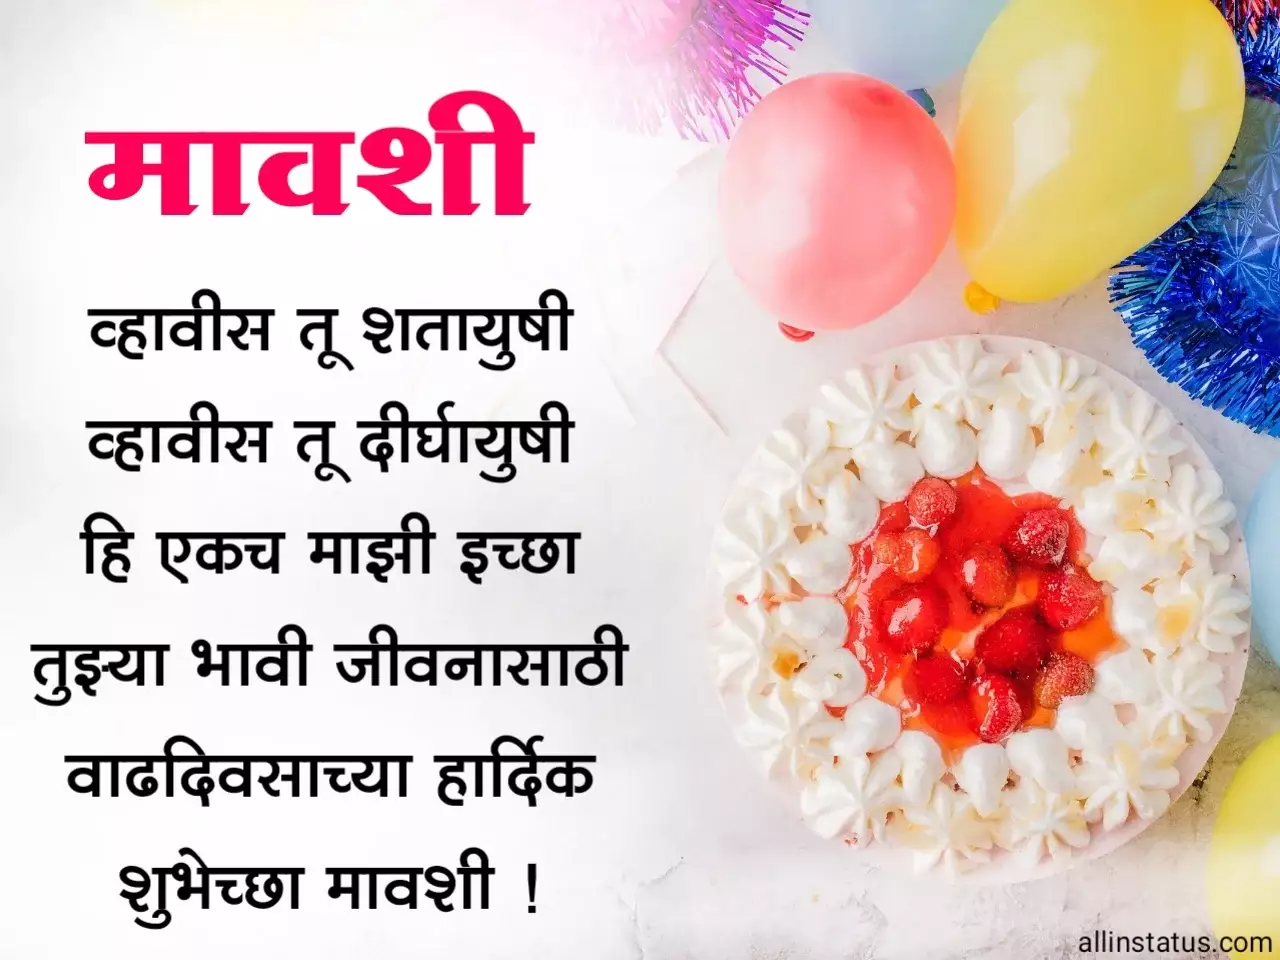 Happy Birthday wishes for mavshi in marathi